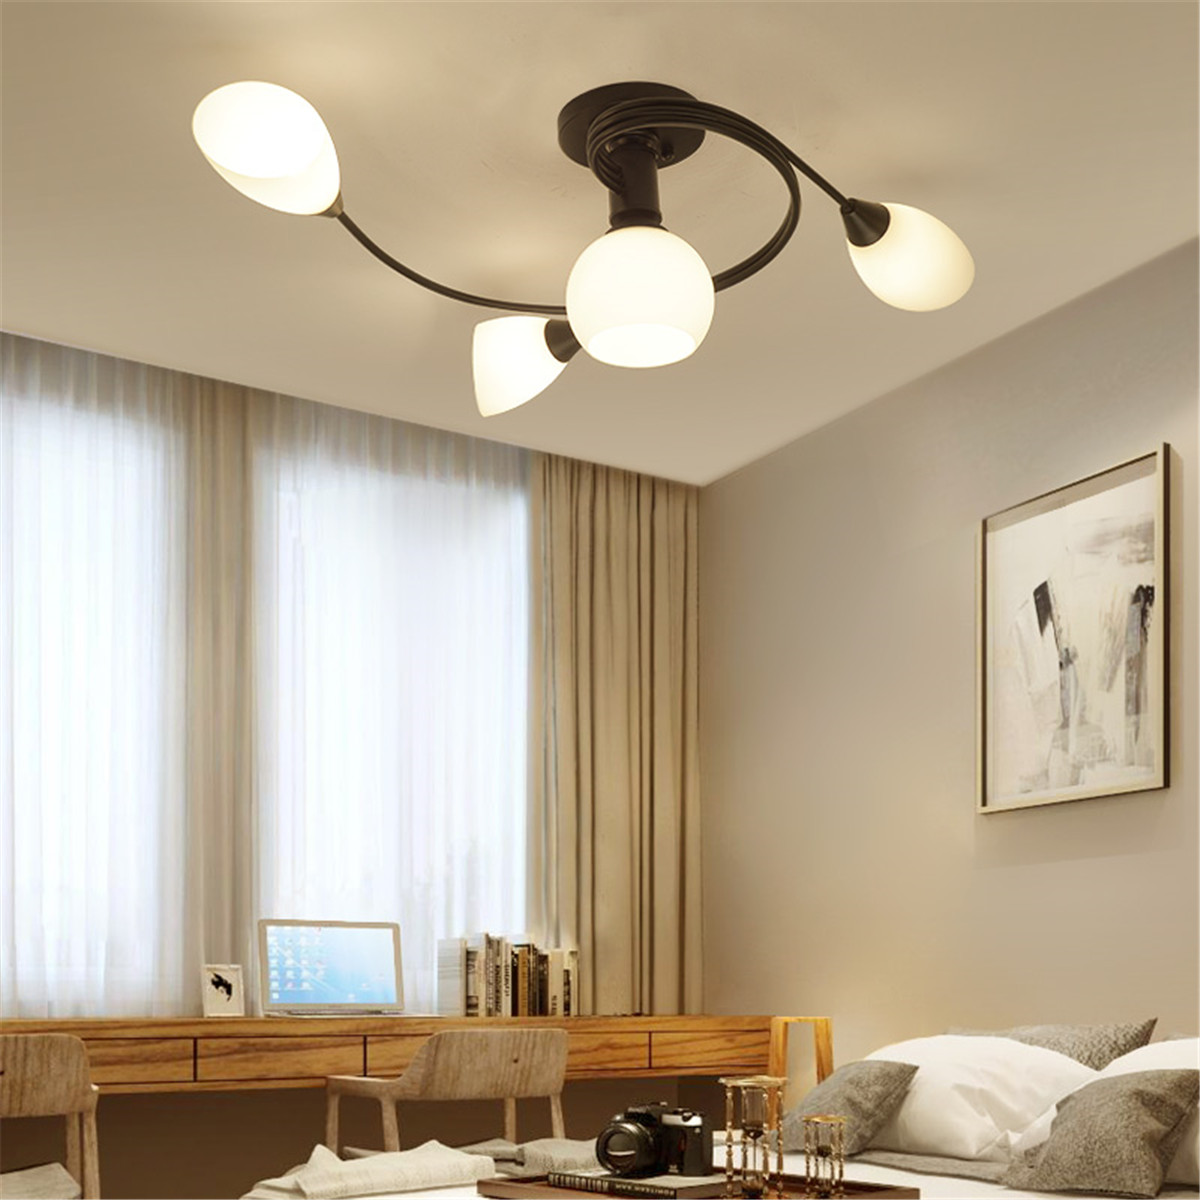 Modern-Ceiling-Light-Home-Bedroom-Pendant-Chandeliers-Lamp-Lighting-Fixture-1604532-2